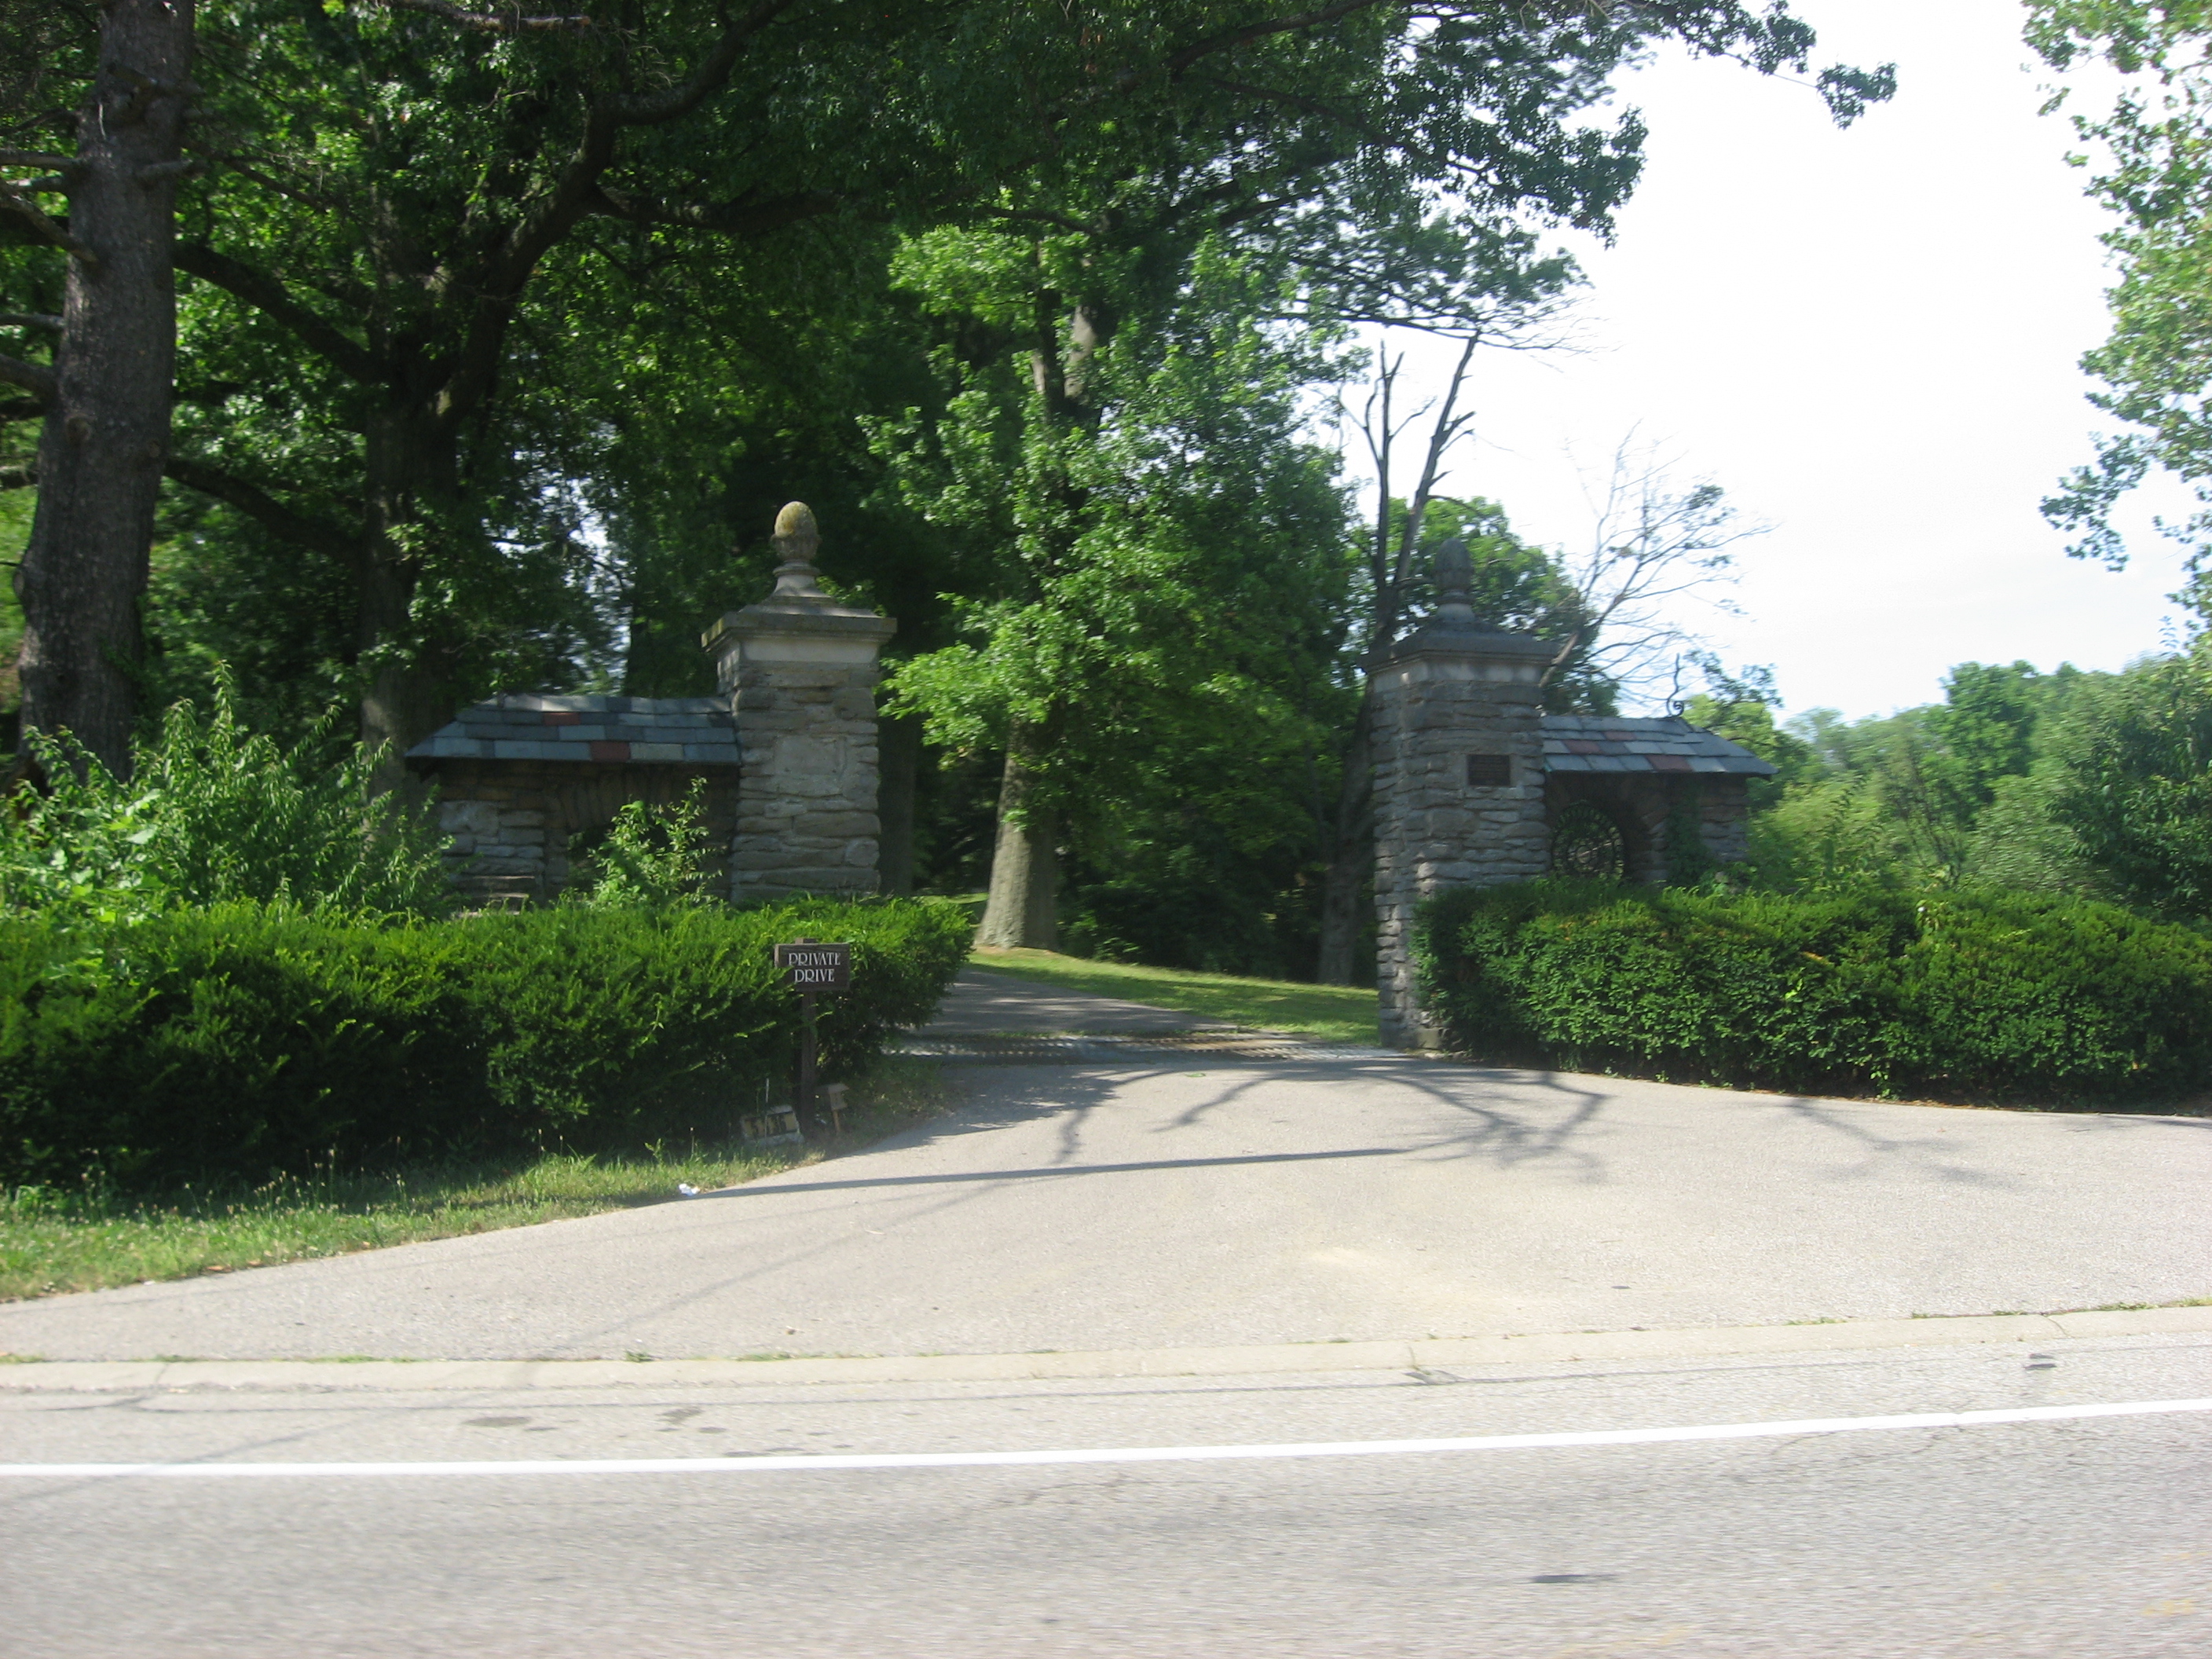 Pine Meer driveway gate